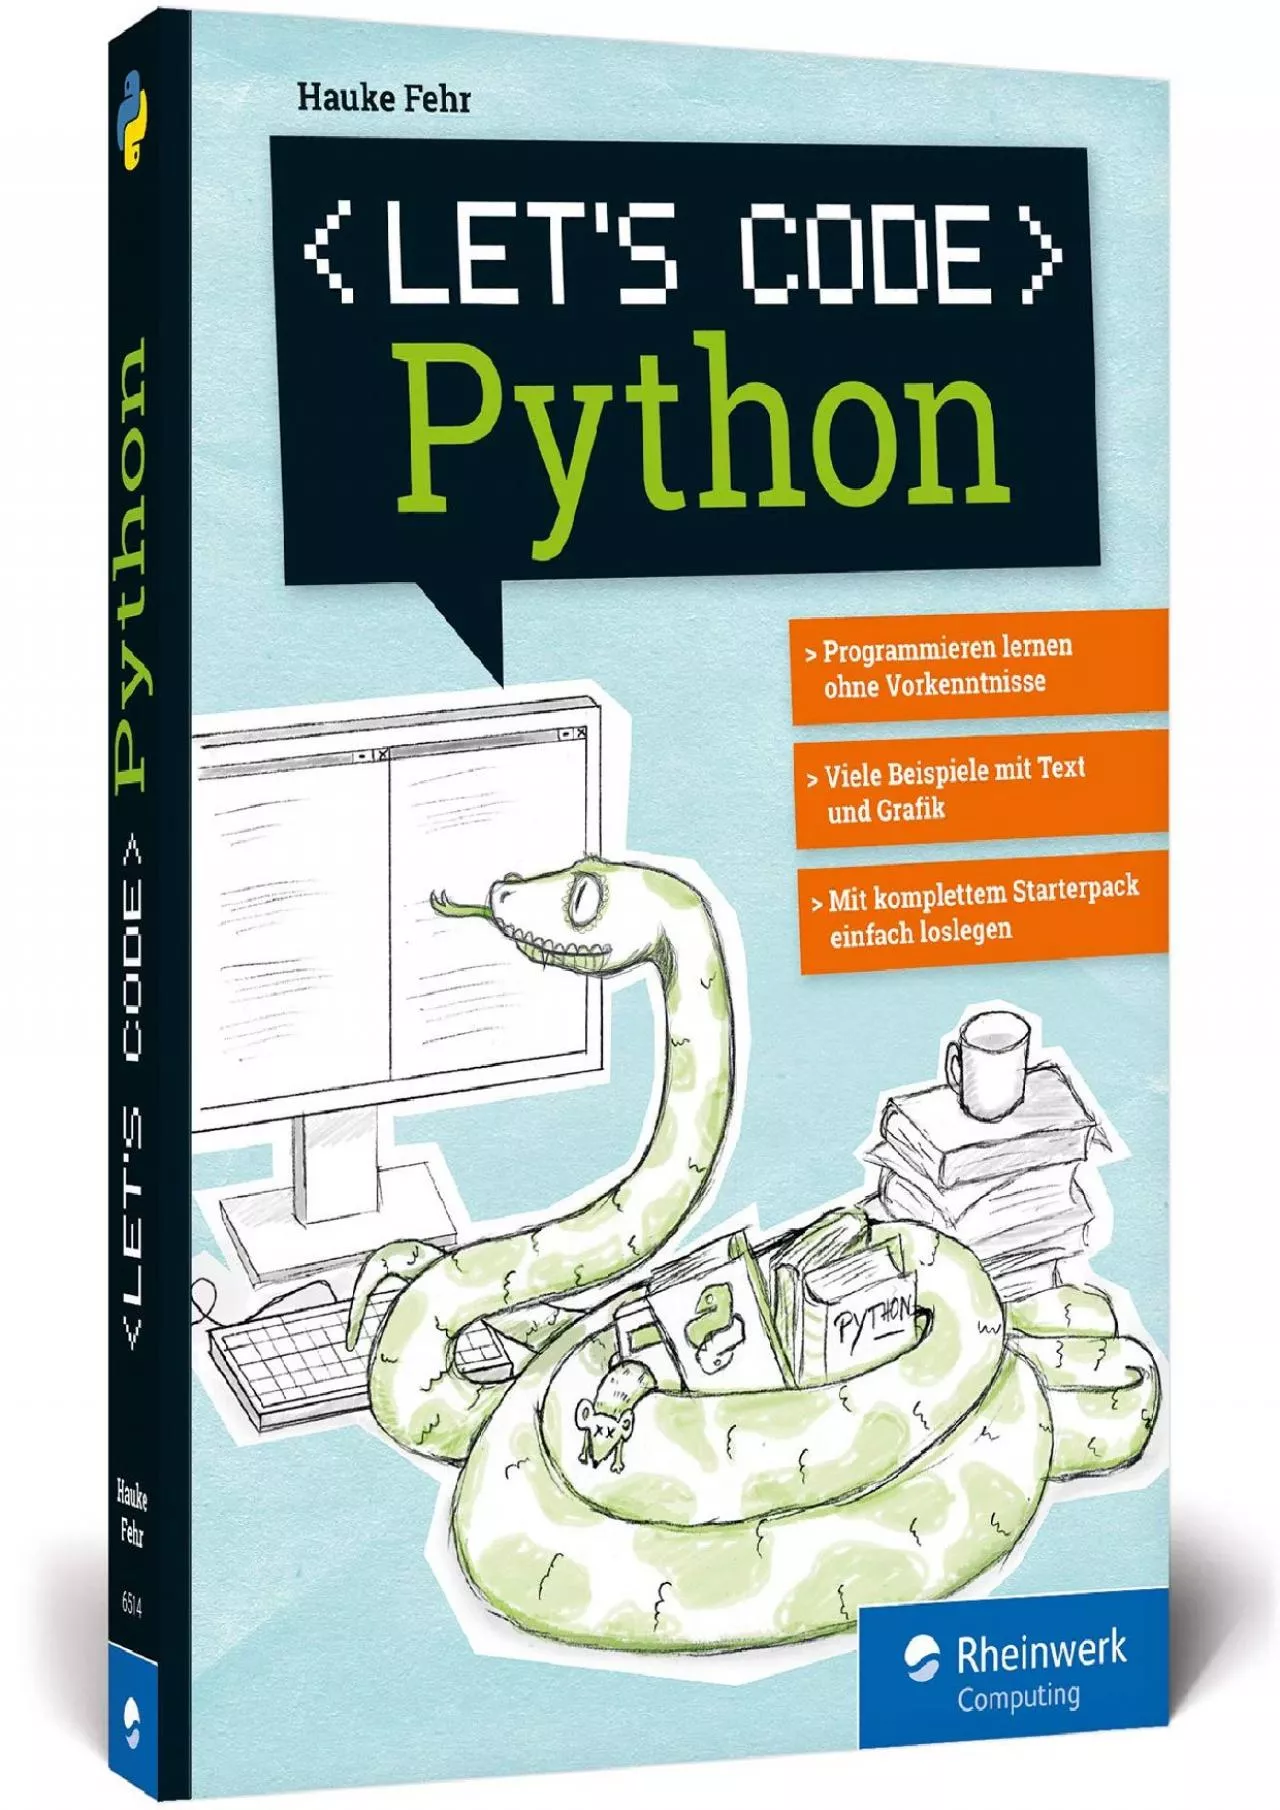 [FREE]-Let\'s code Python: Programmieren lernen mit Python ohne Vorkenntnisse. Ideal für